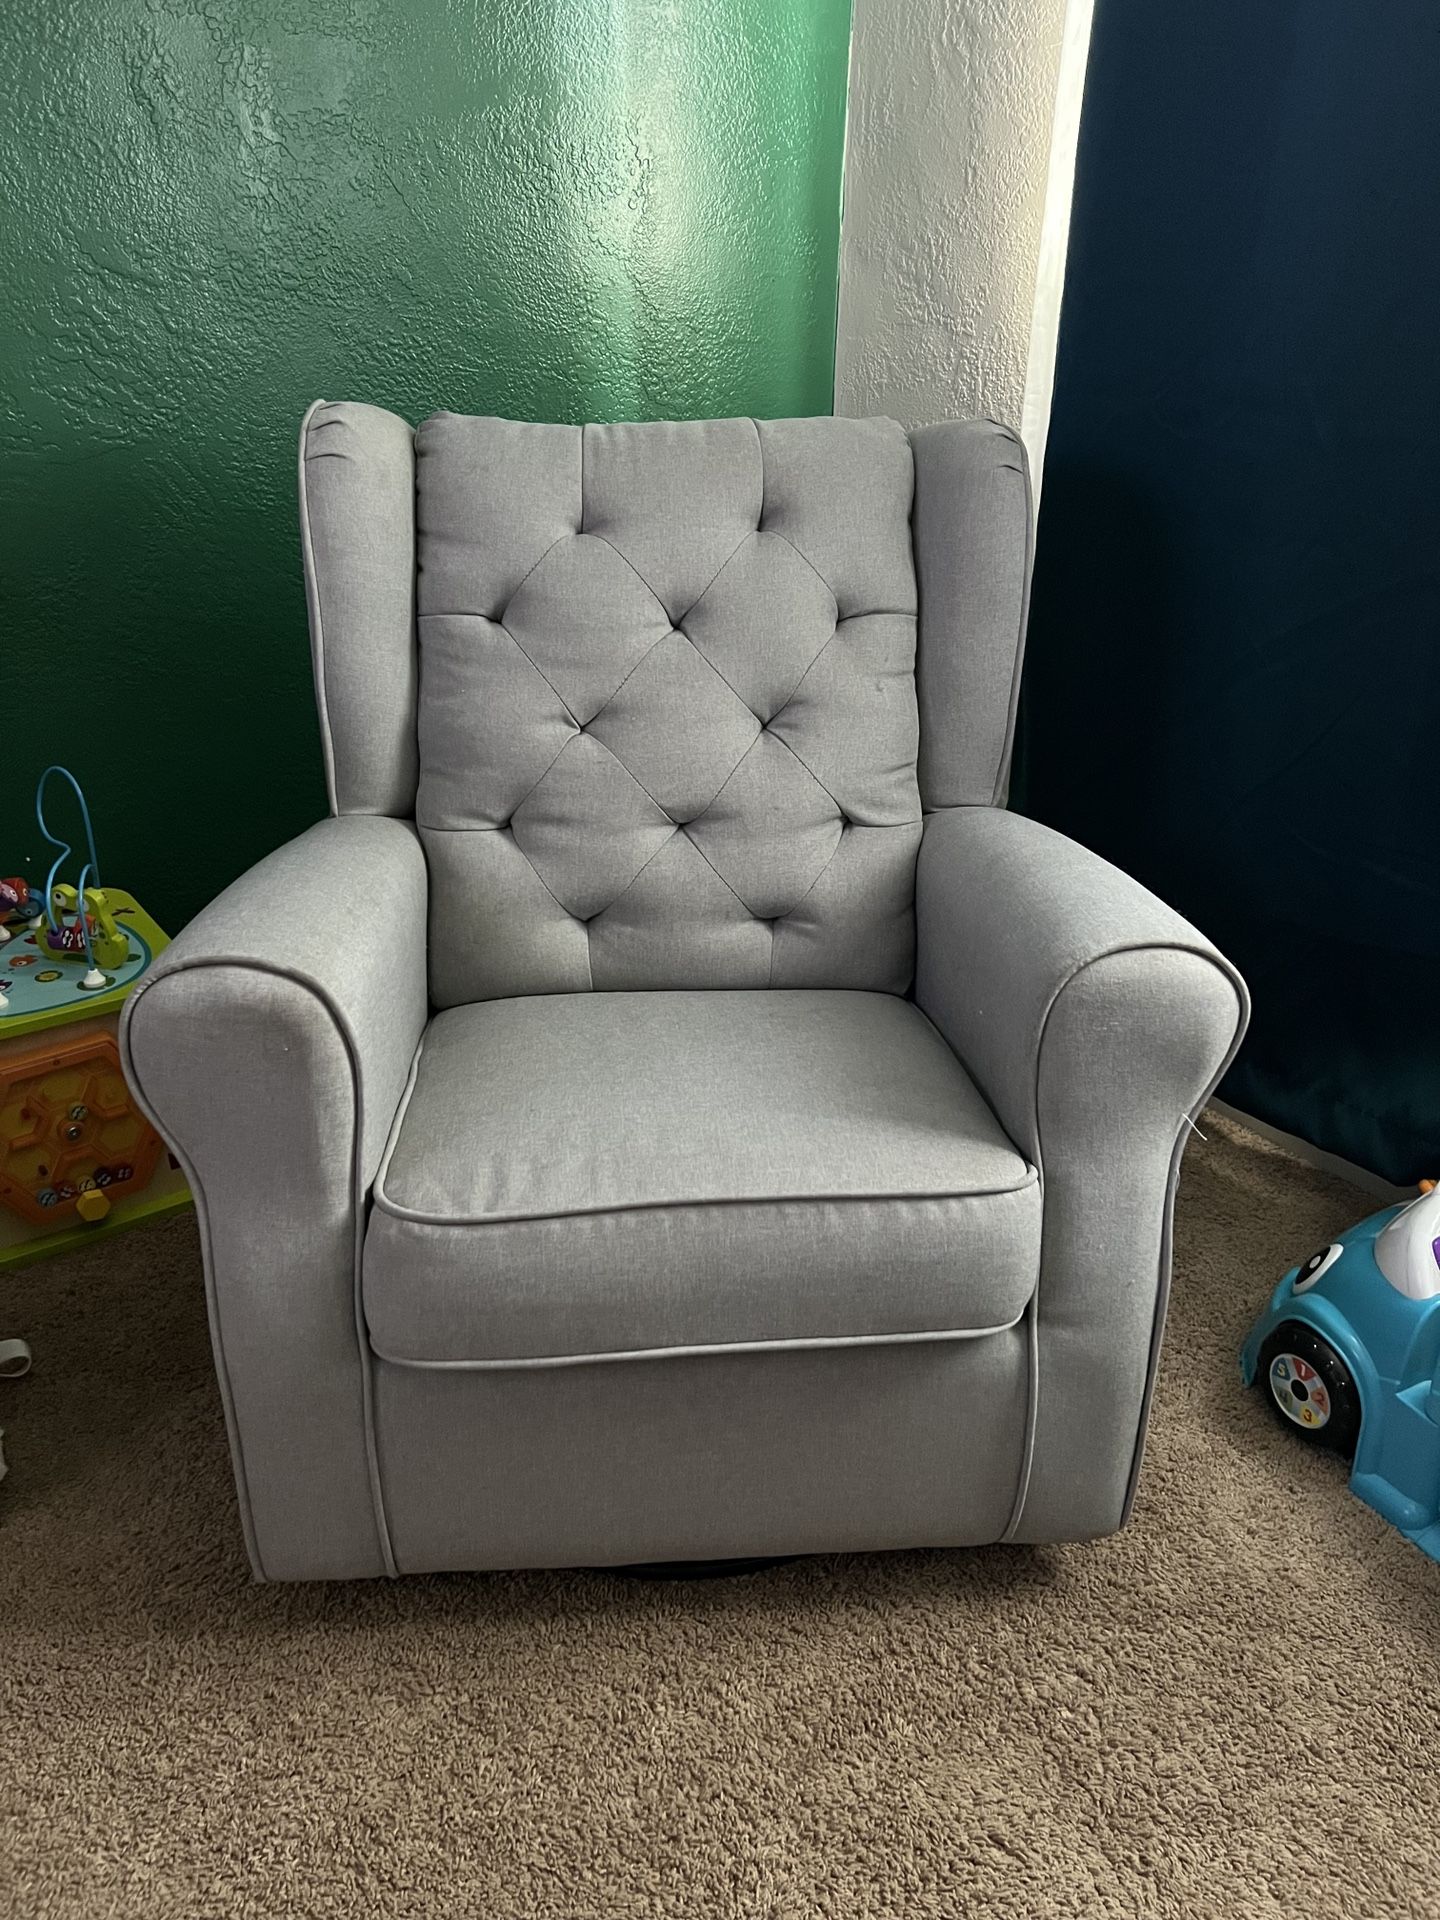 Nursery Swivel Rocker Chair